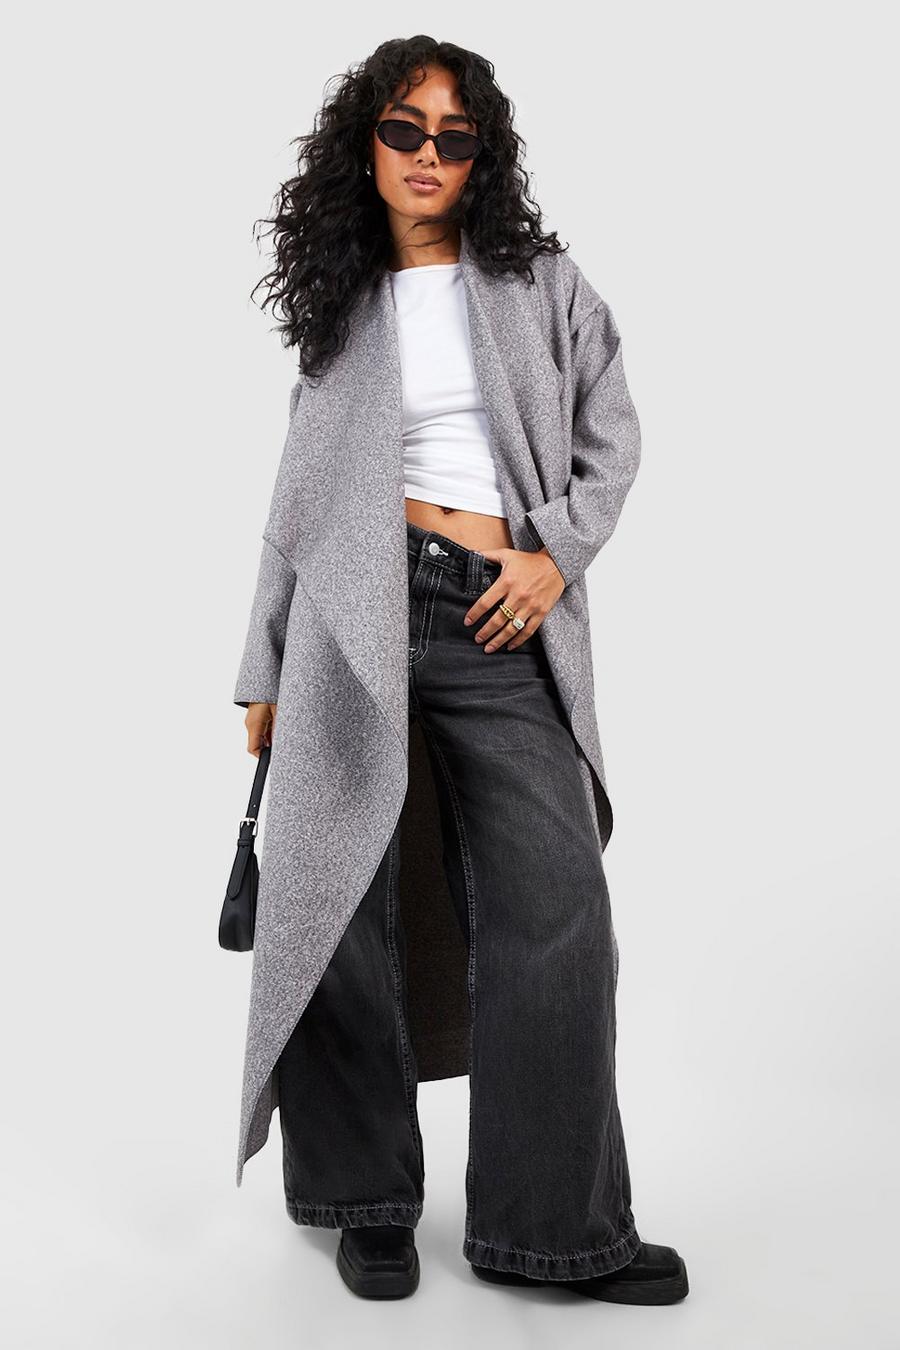 Grey Coats & Jackets, Women's Grey Coats & Jackets